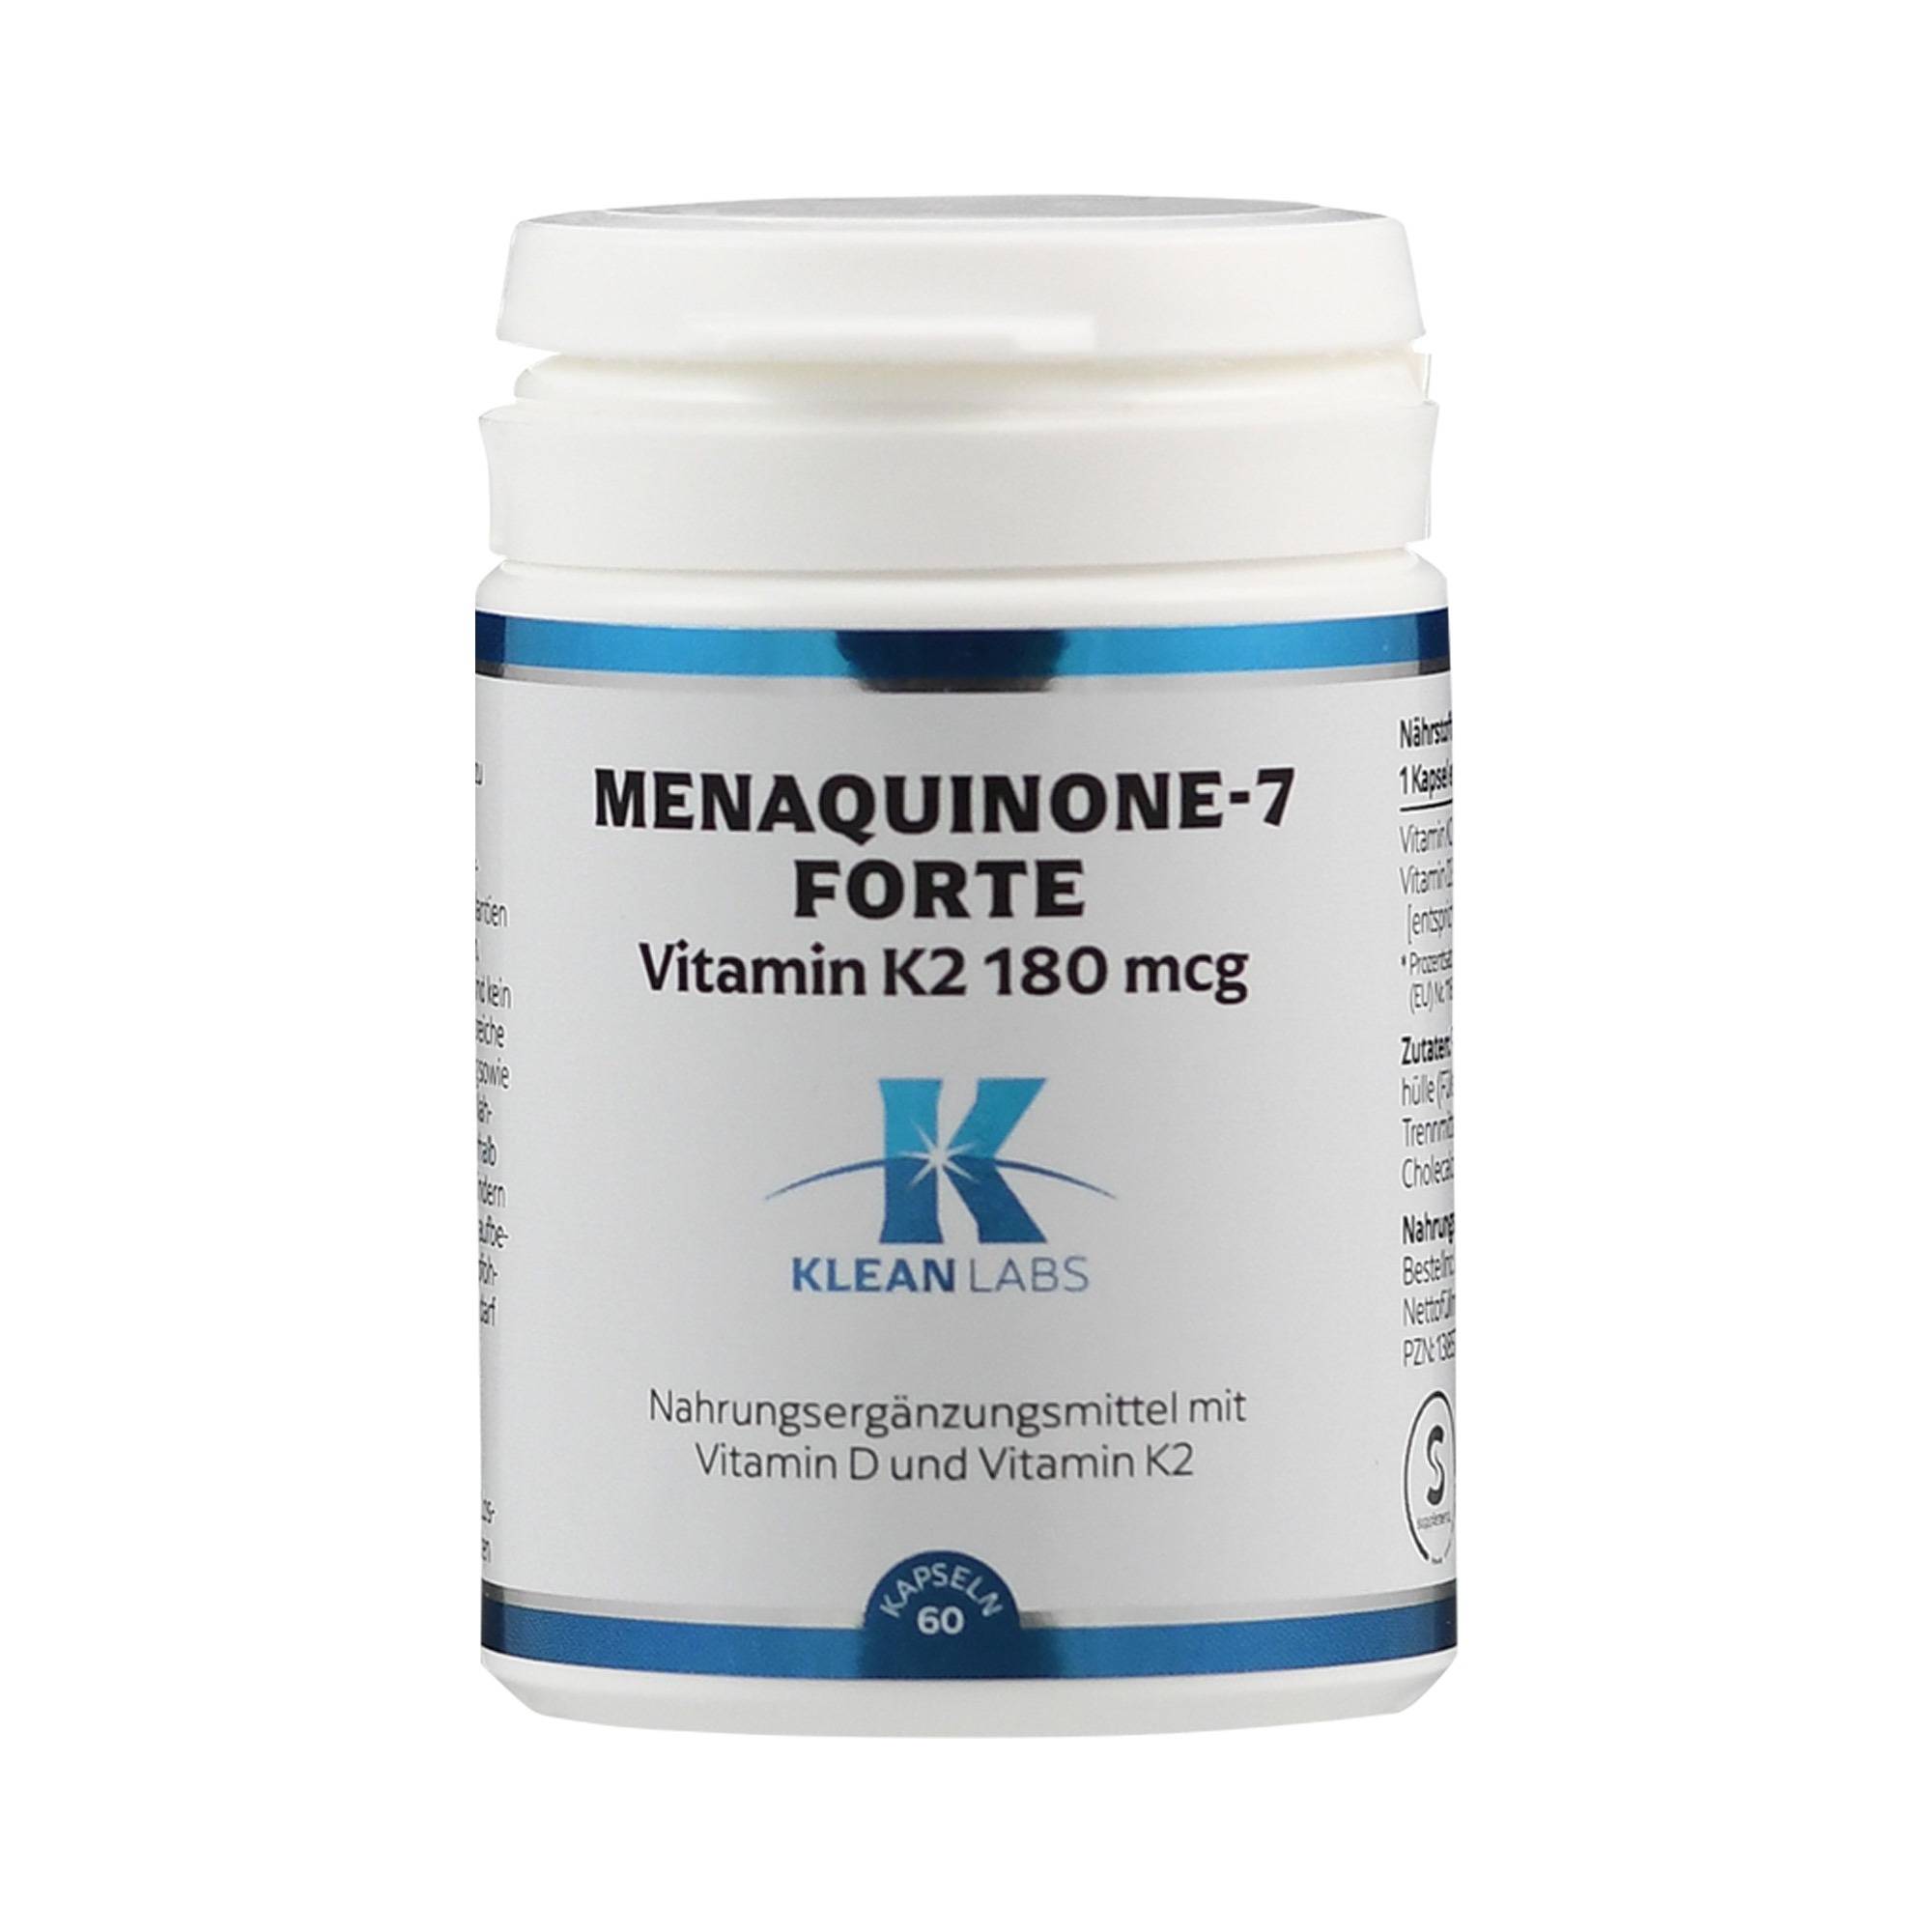 menaquinone-7 Forte Vit. K2 von Klean Labs.